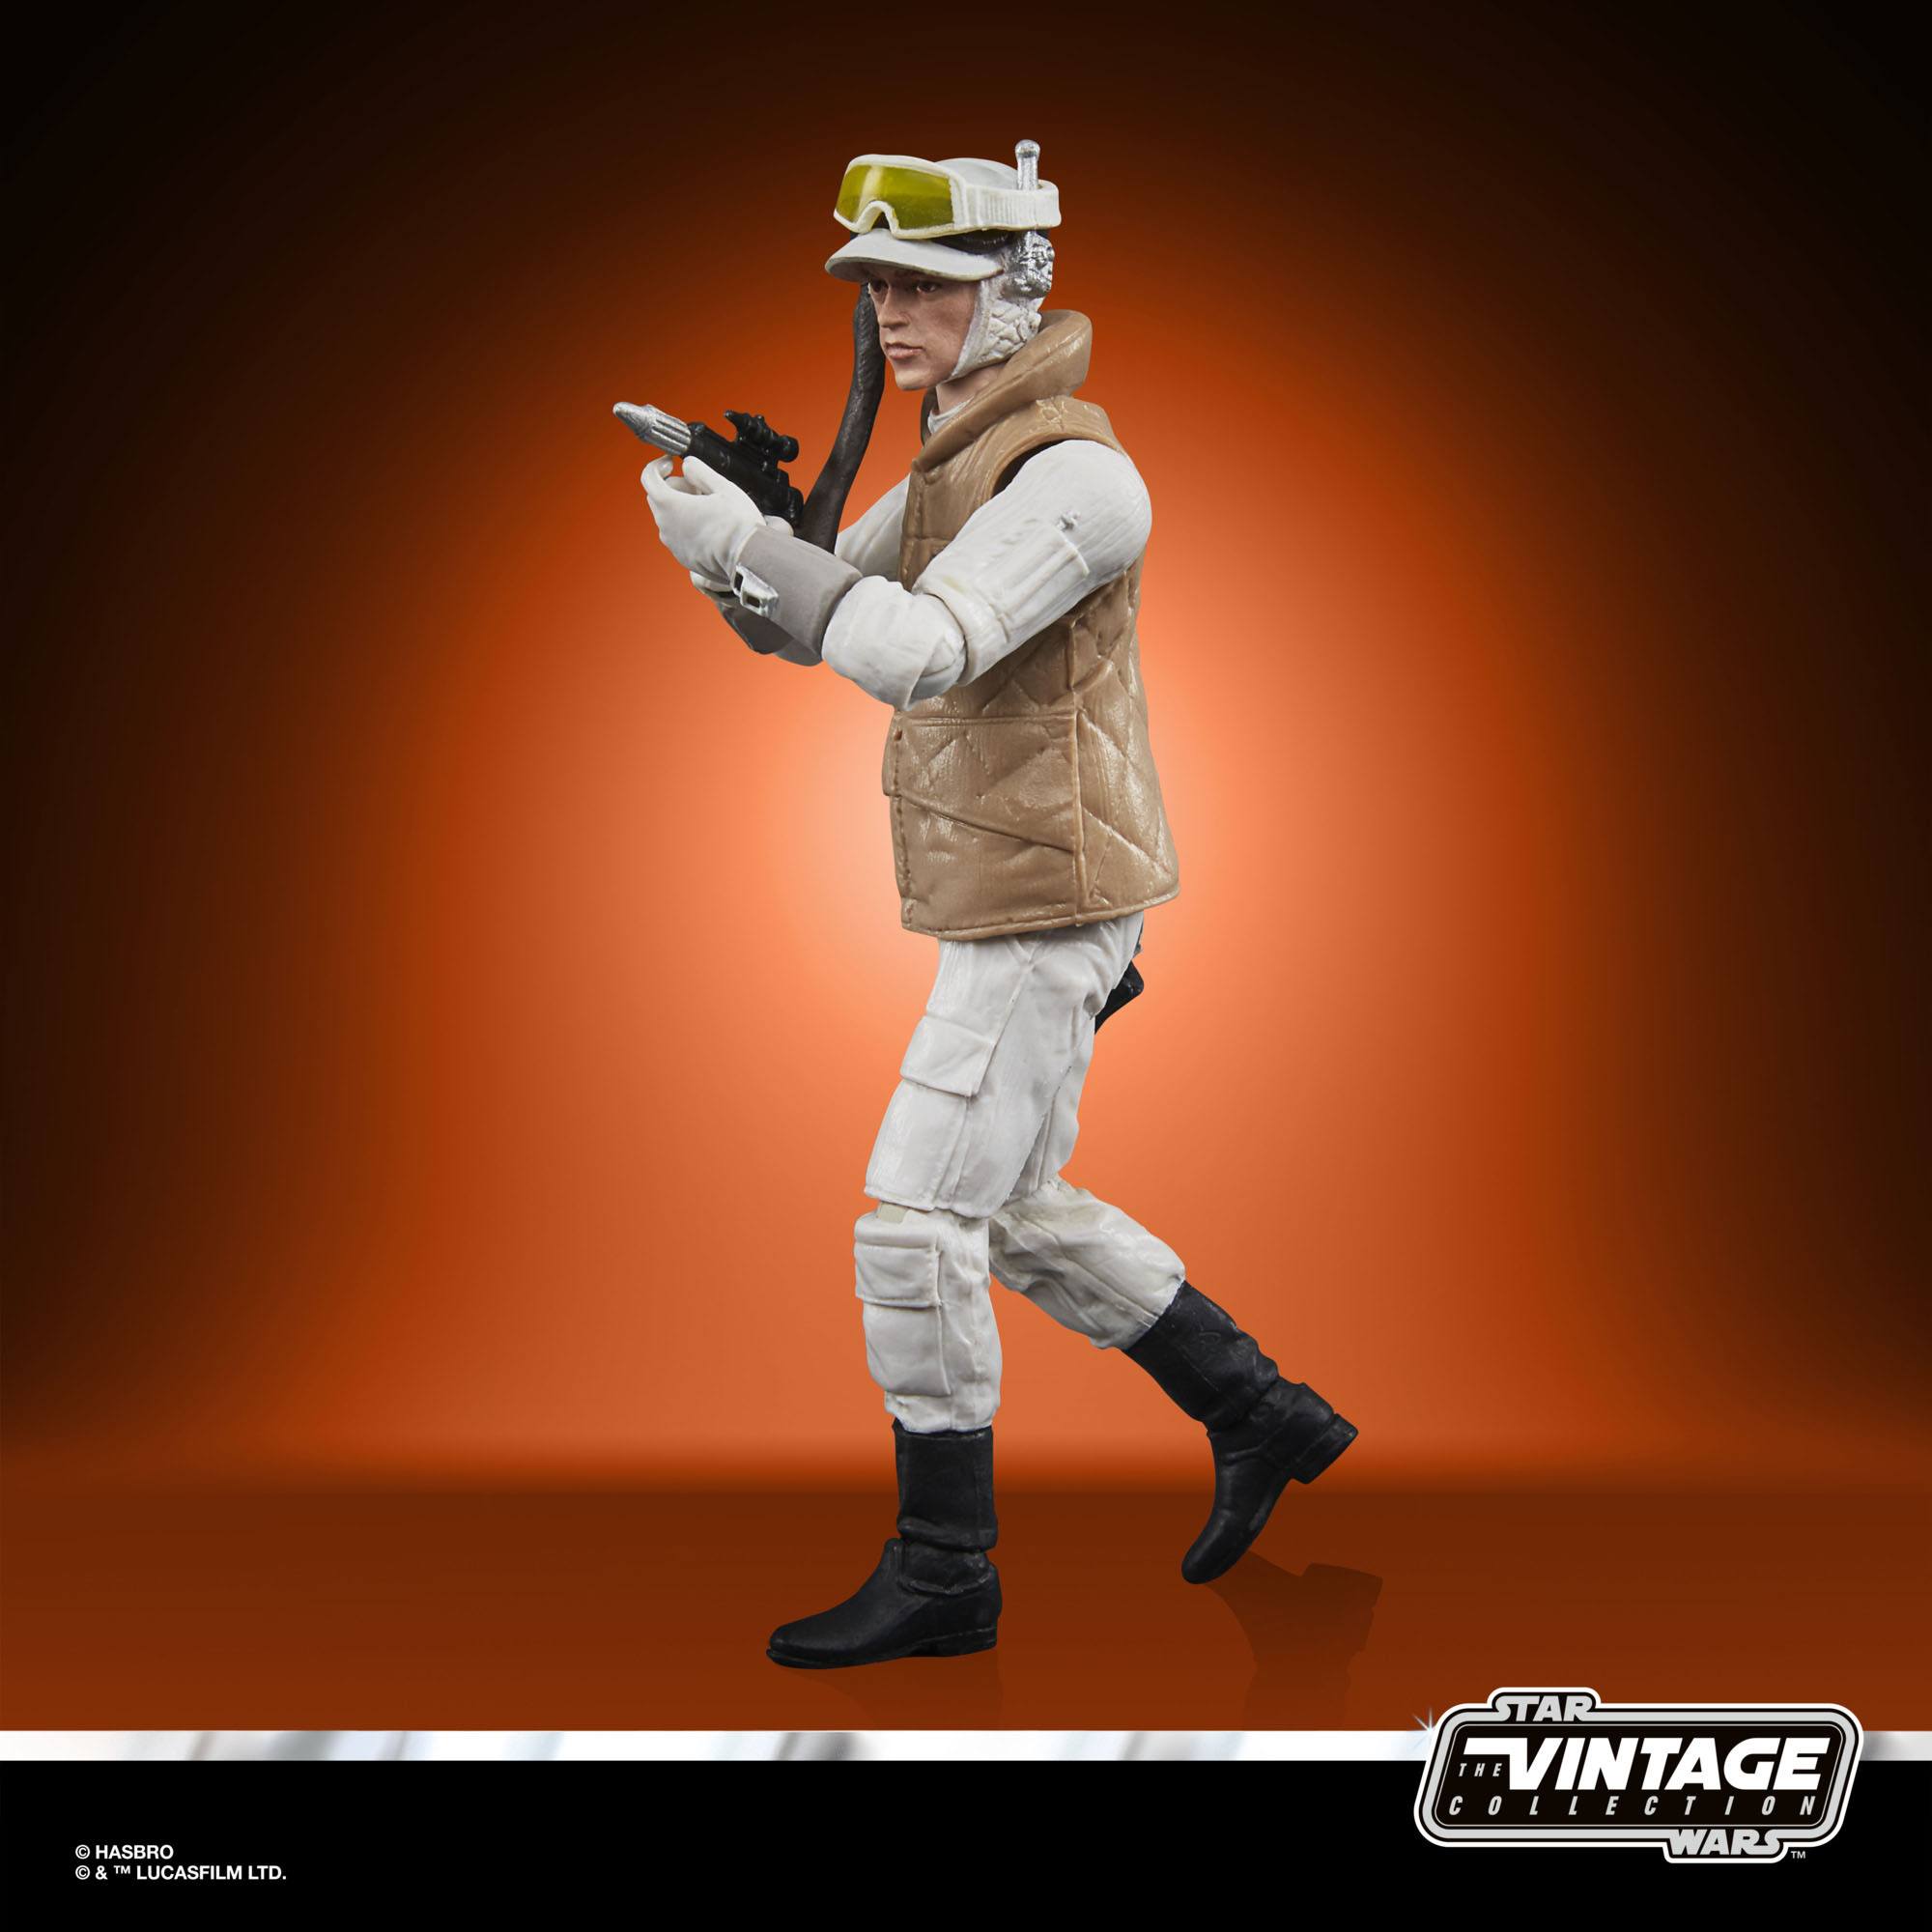 Star Wars Episode V Vintage Collection Actionfigur 2022 Rebel Soldier (Echo Base Battle Gear) 10 cm HASF4467 5010993958023